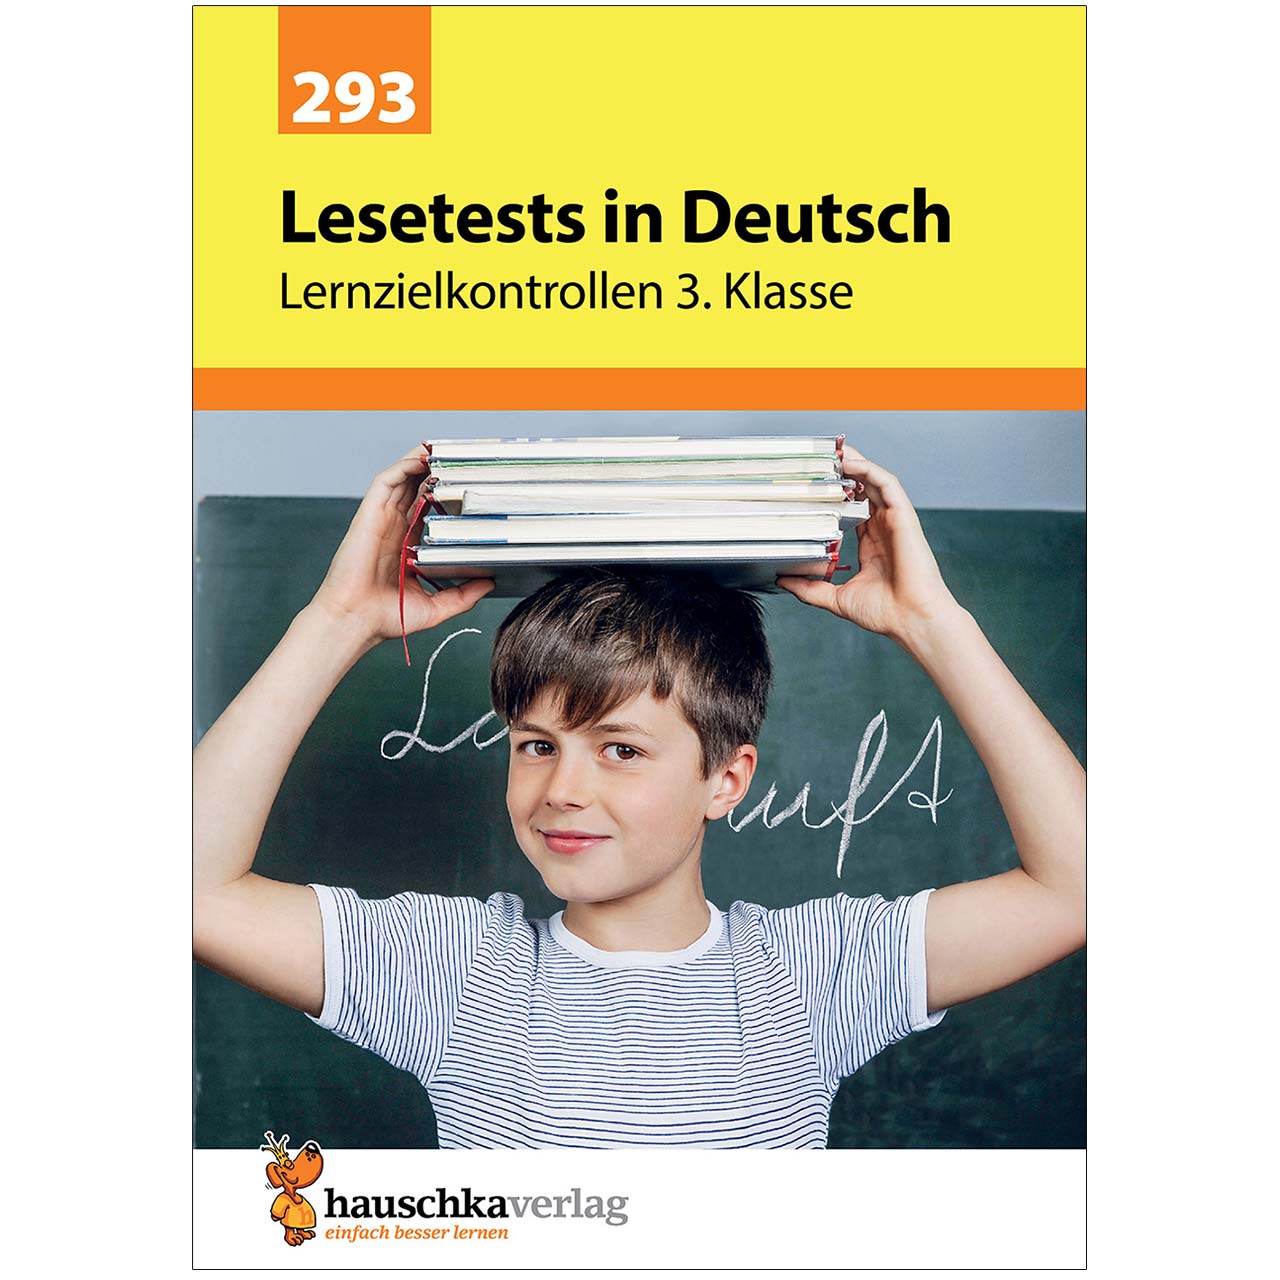 Lesetests in Deutsch – Lernzielkontrollen 3. Klasse